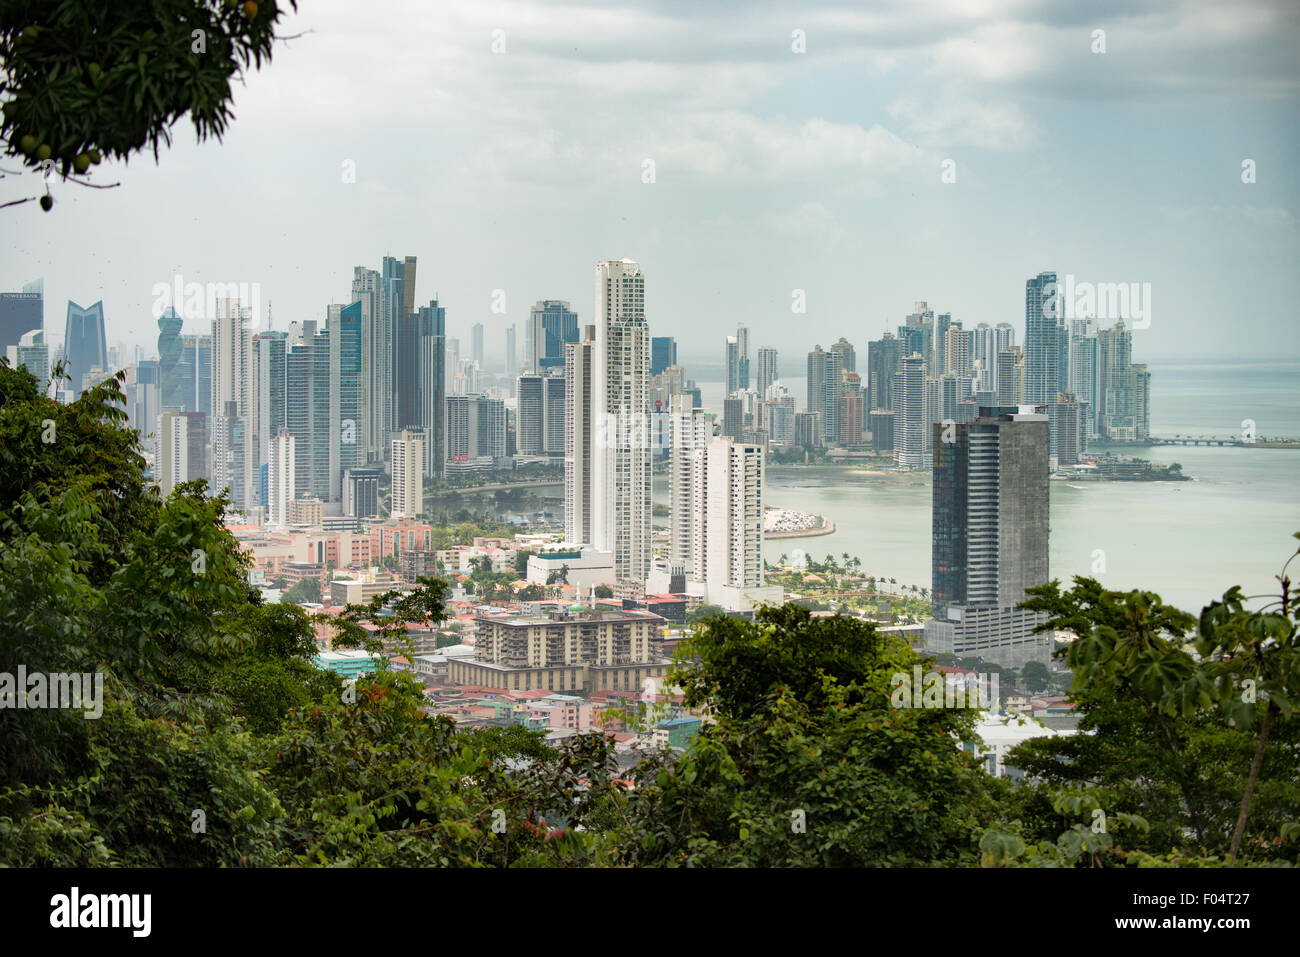 PANAMA CITY, Panama--die Wolkenkratzer von die neue Panama City Skyline als Samen von Ancon Hügel. Ancon Hill ist nur 654-Füße hoch aber befiehlt eine beeindruckende Aussicht über die alte und neue Abschnitte von Panama City. Mit Blick auf den Pazifischen Ozean und der Eingang zu den Panama-Kanal die Gegend war historisch gesehen, wo die Verwaltung des Panama-Kanals wurde zentriert und hat jetzt eine Mischung aus High-End-Residences und Ministerien. Stockfoto